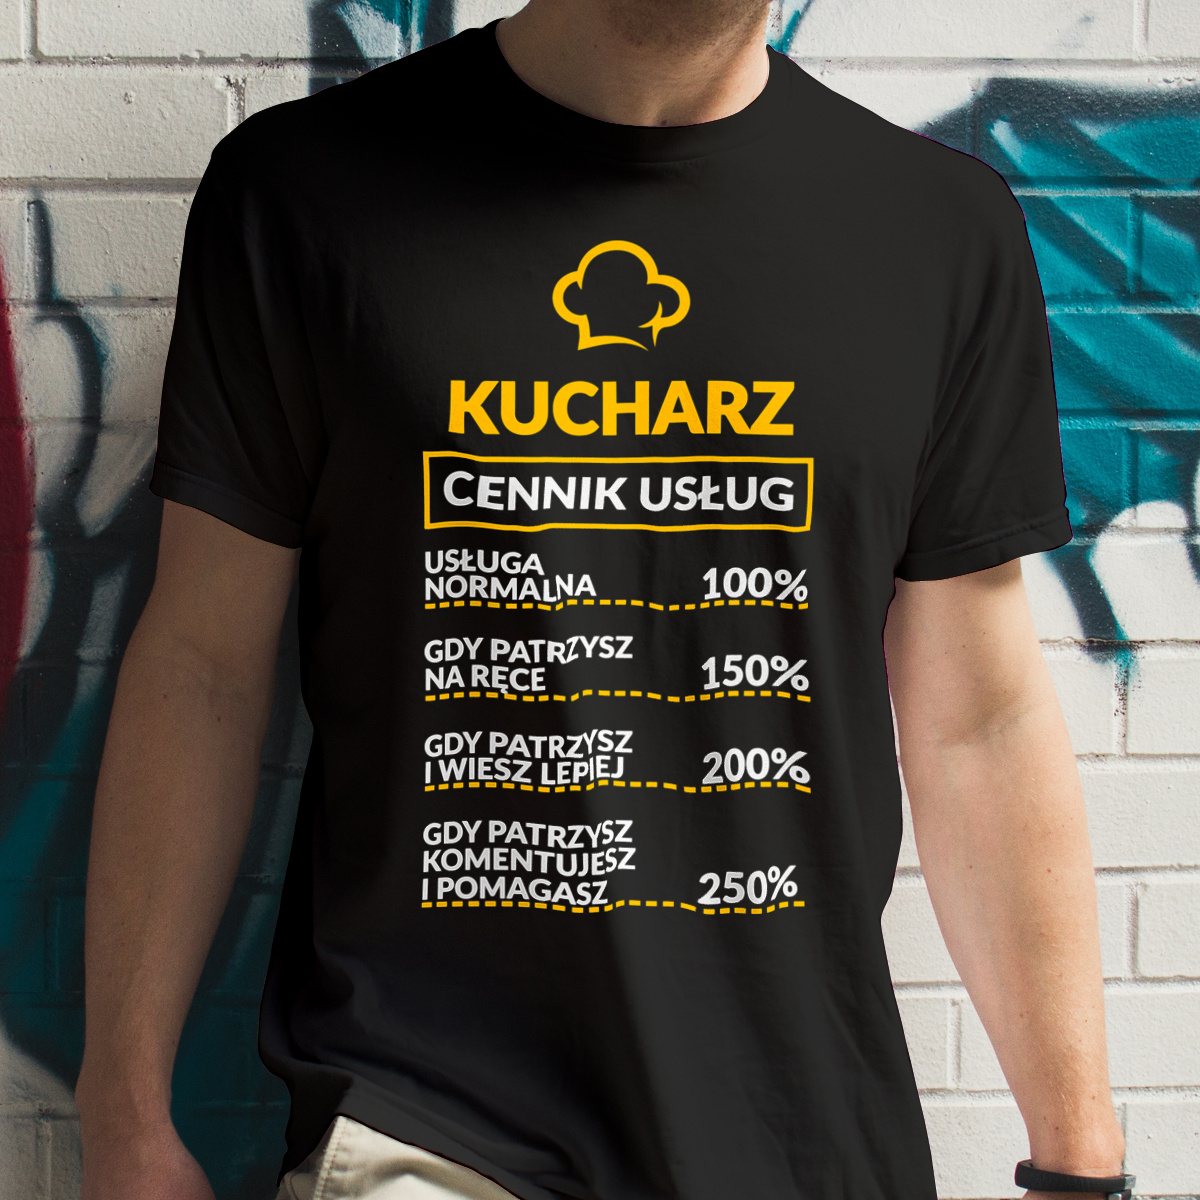 Kucharz - Cennik Usług - Męska Koszulka Czarna